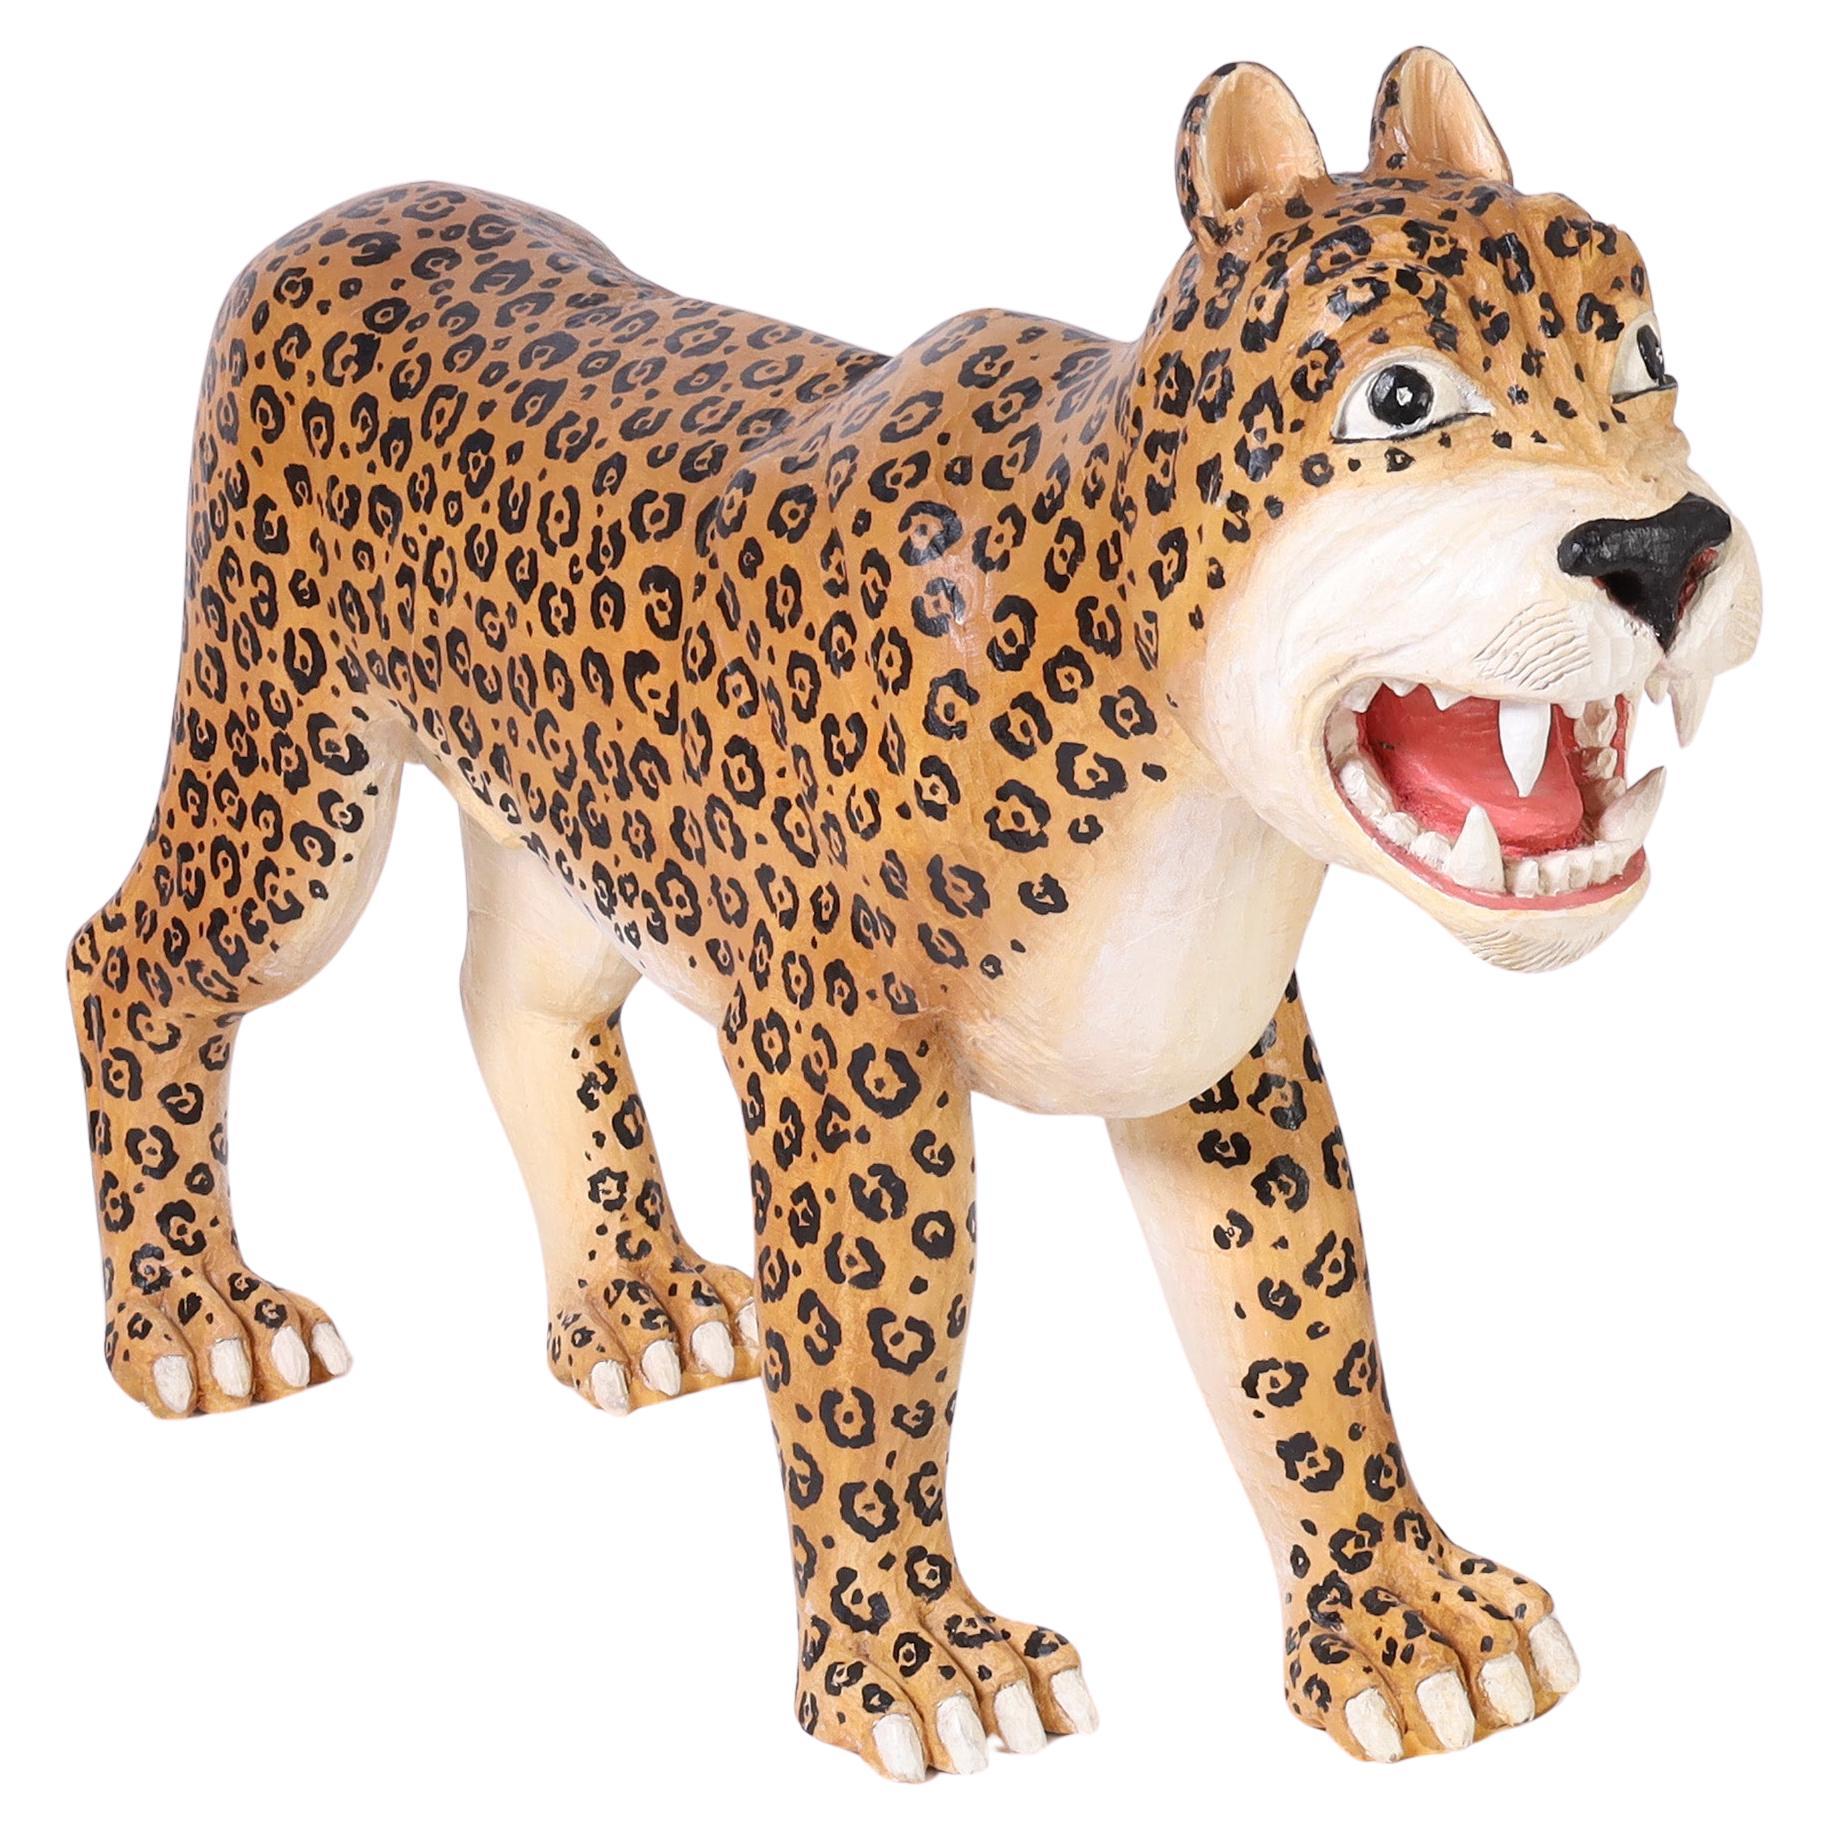 Jaguar ou grand félin en bois sculpté et peint